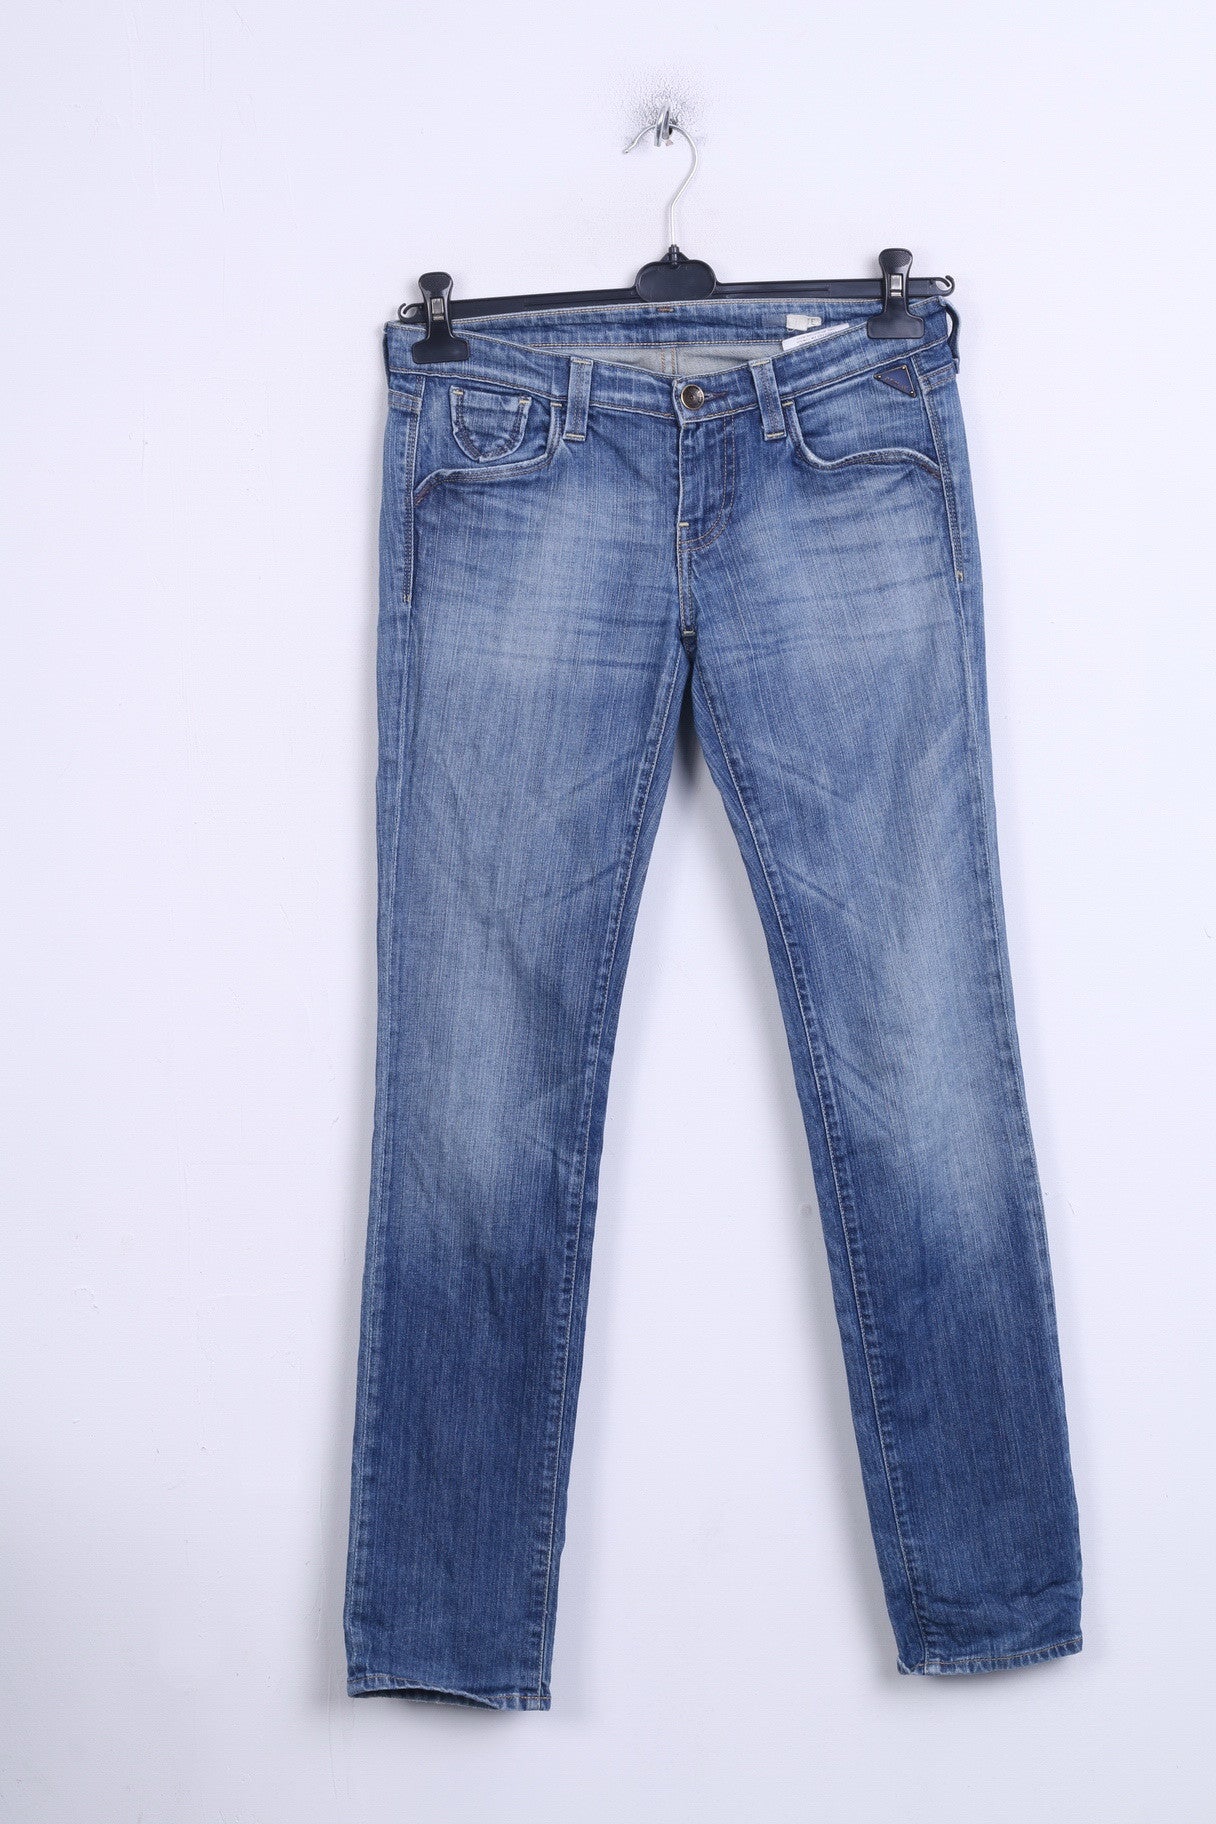 Replay Womens Trousers W26 L32 Denim Jeans Cotton Blue - RetrospectClothes